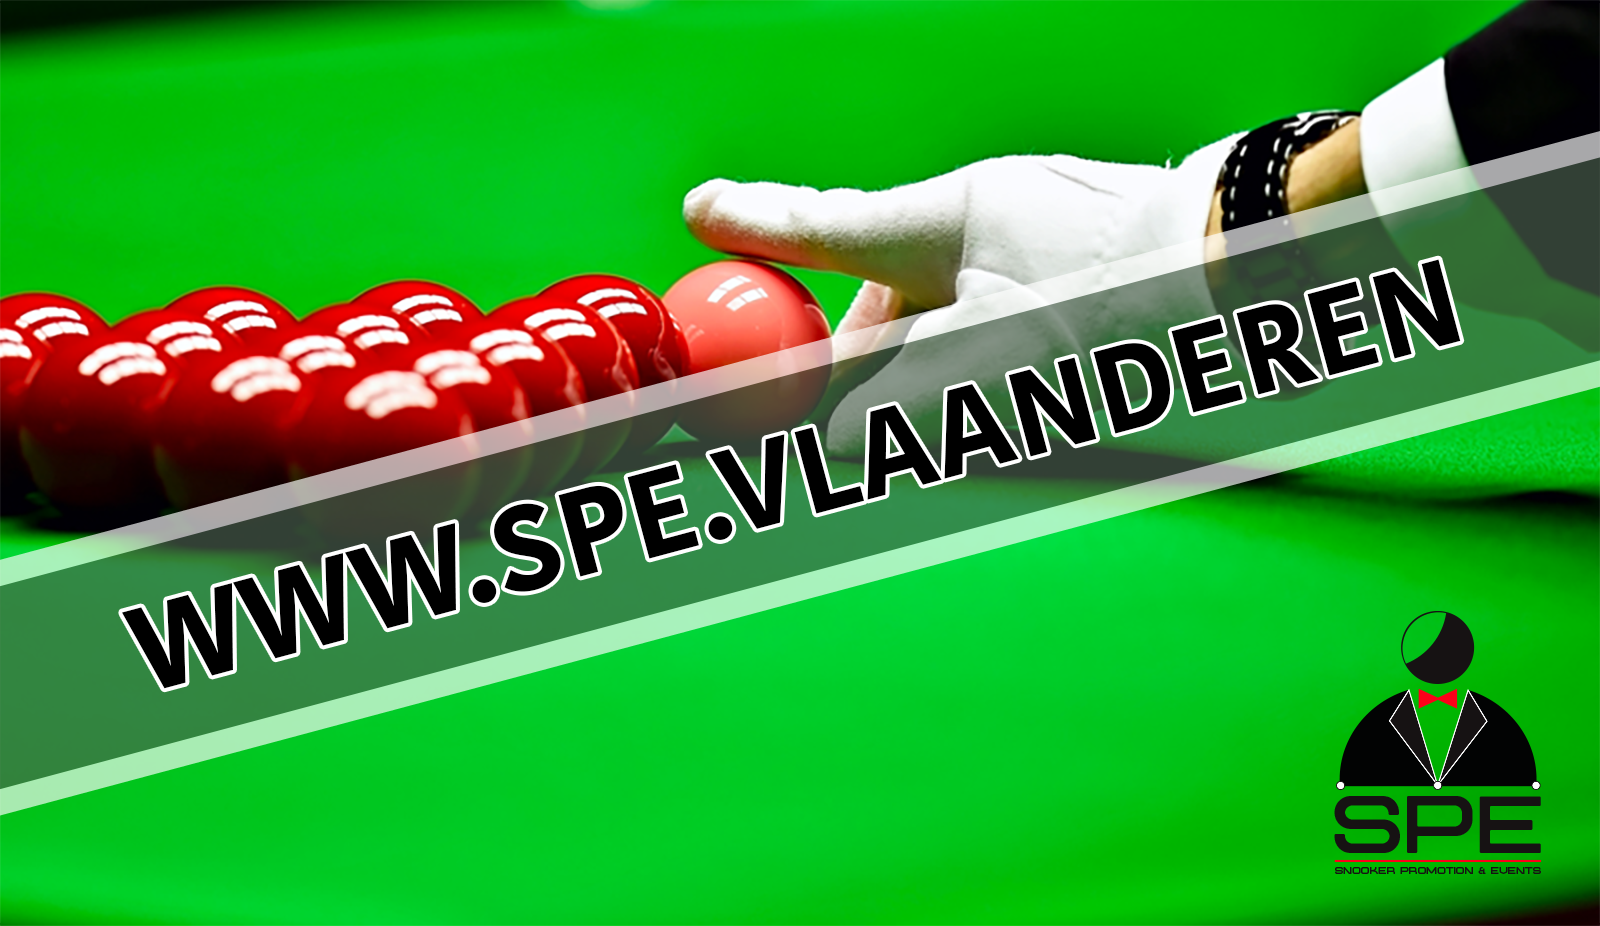 www.spe.vlaanderen